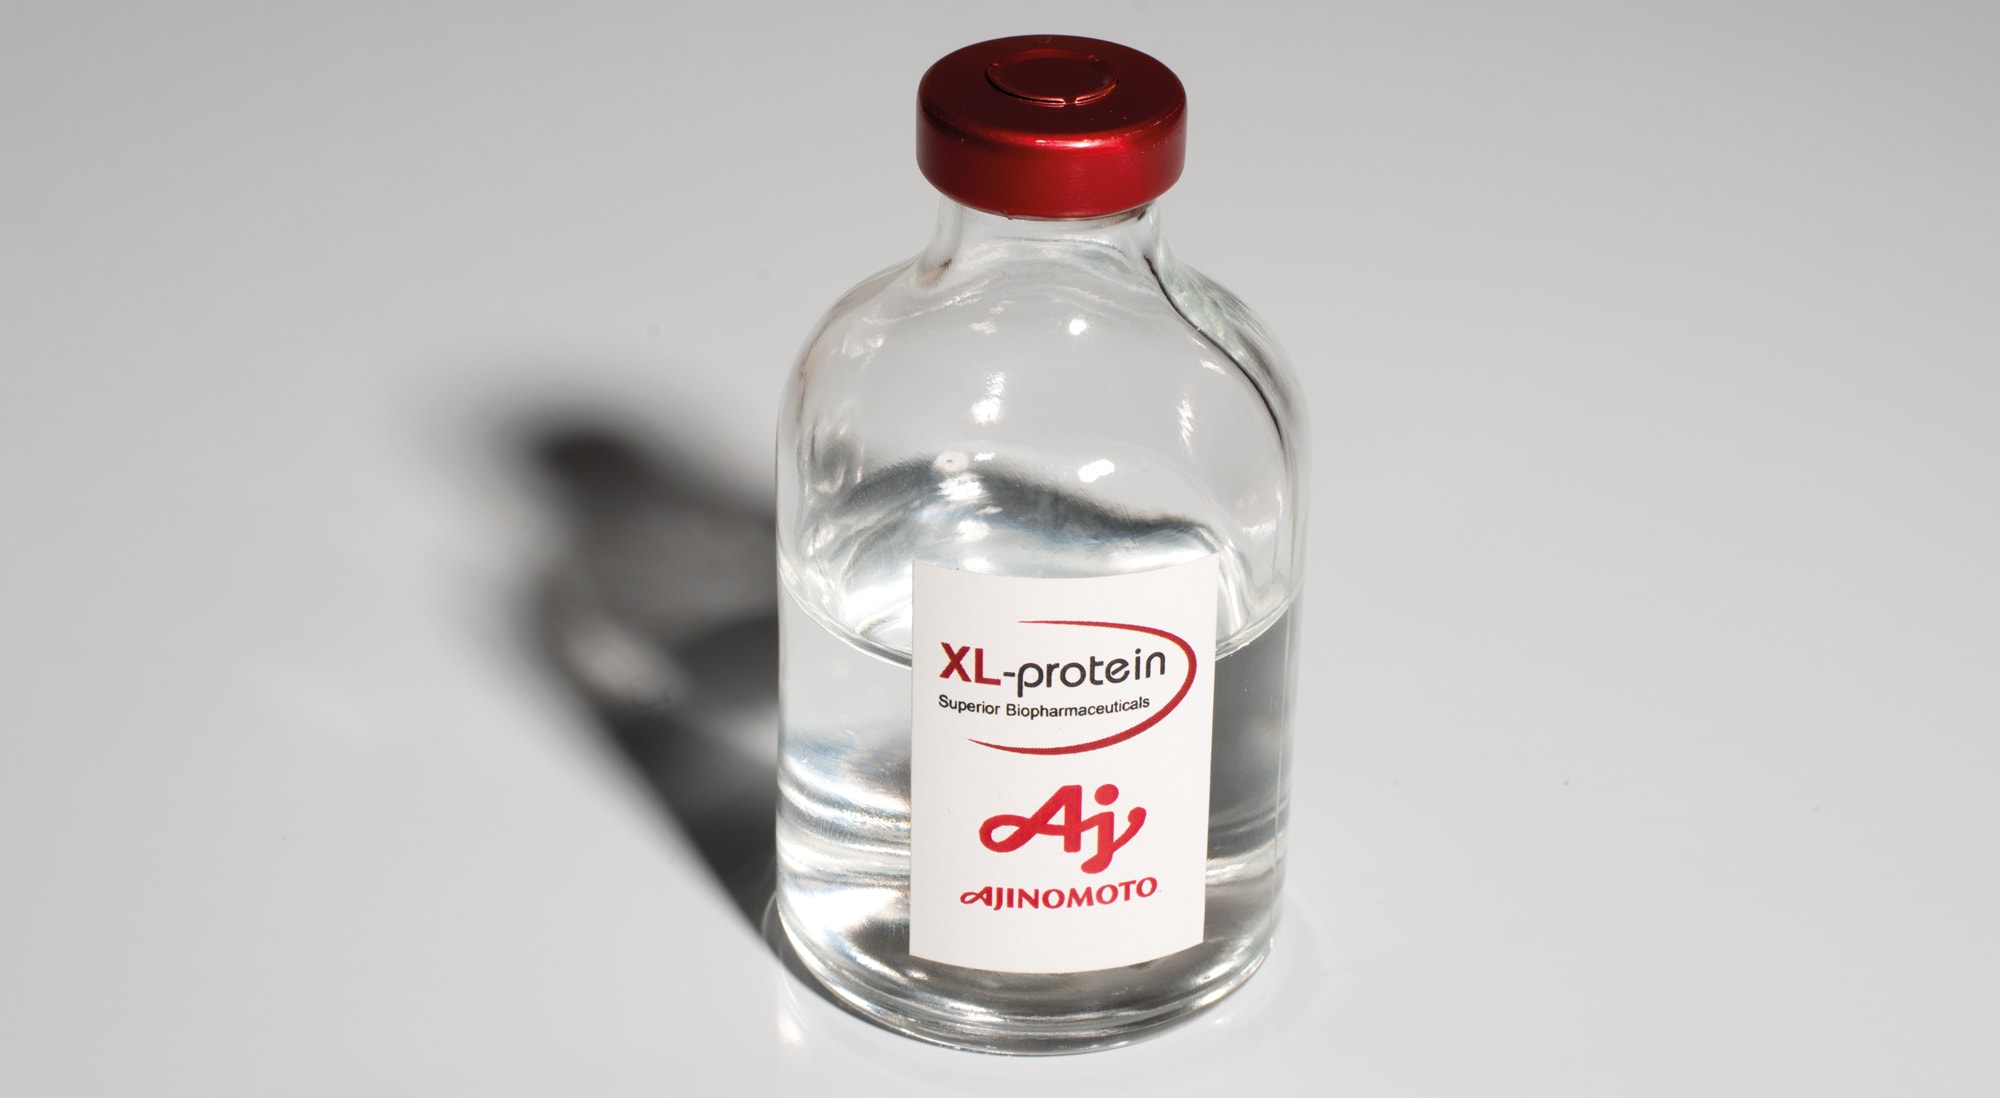 Ampulle-mit-Flüssigkeit-etikett-von-XL-protein-und-Ajinomoto